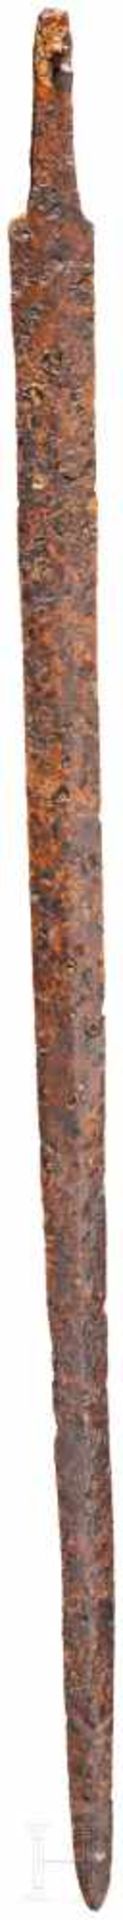 Spatha des Typs Straubing-Nydam, römisch, 2. - 3. Jhdt.Gut erhaltenes römisches Eisenschwert mit